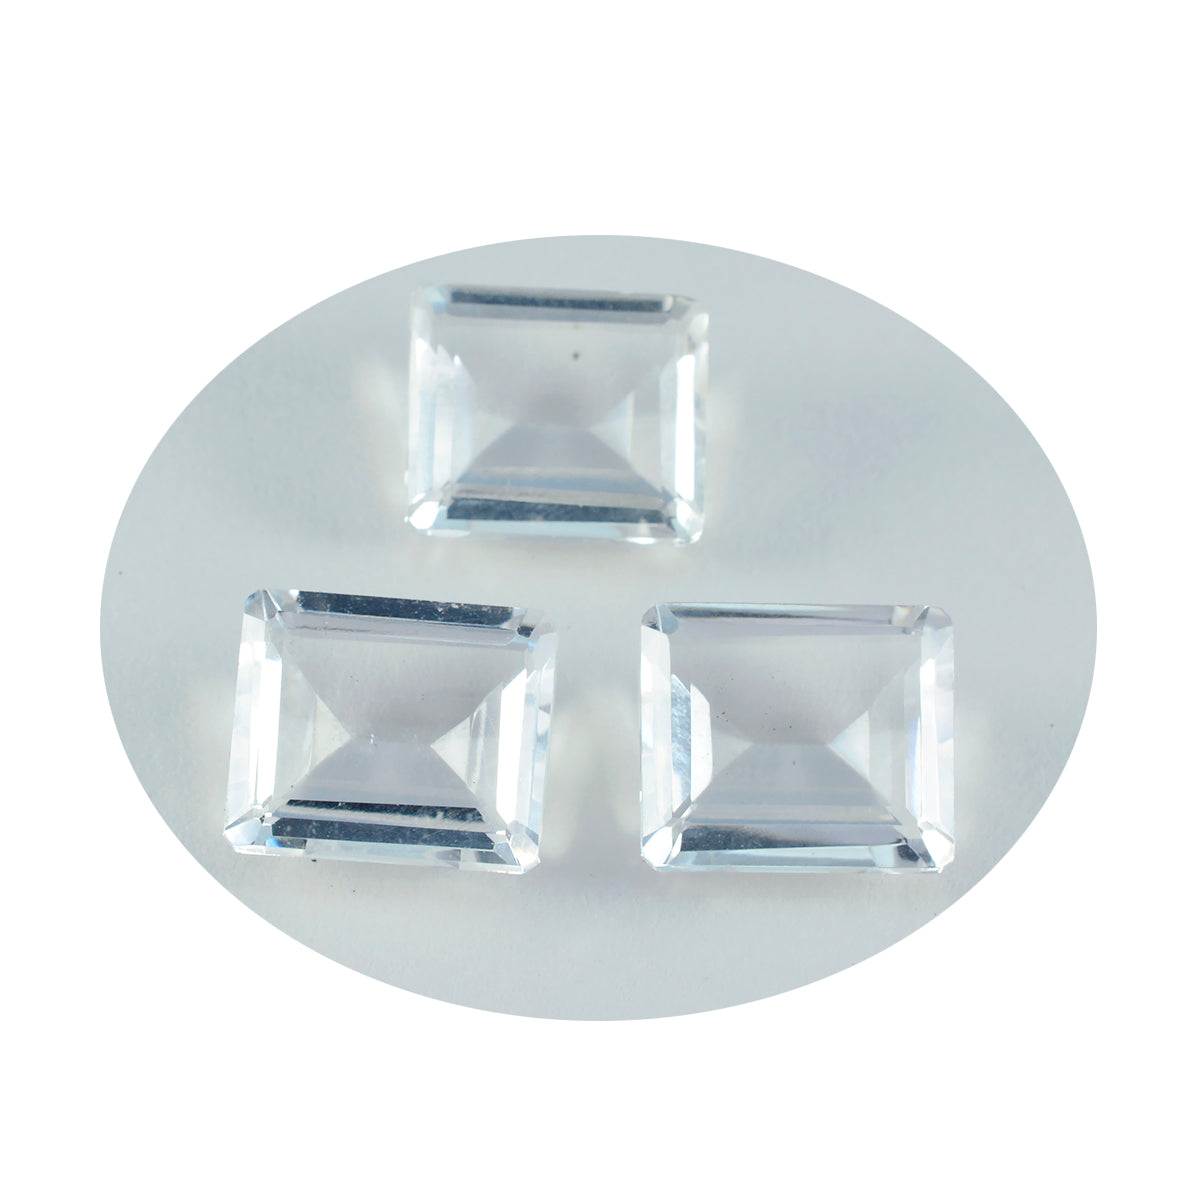 riyogems 1 шт. белый кристалл кварца ограненный 10x12 мм восьмиугольной формы камень потрясающего качества